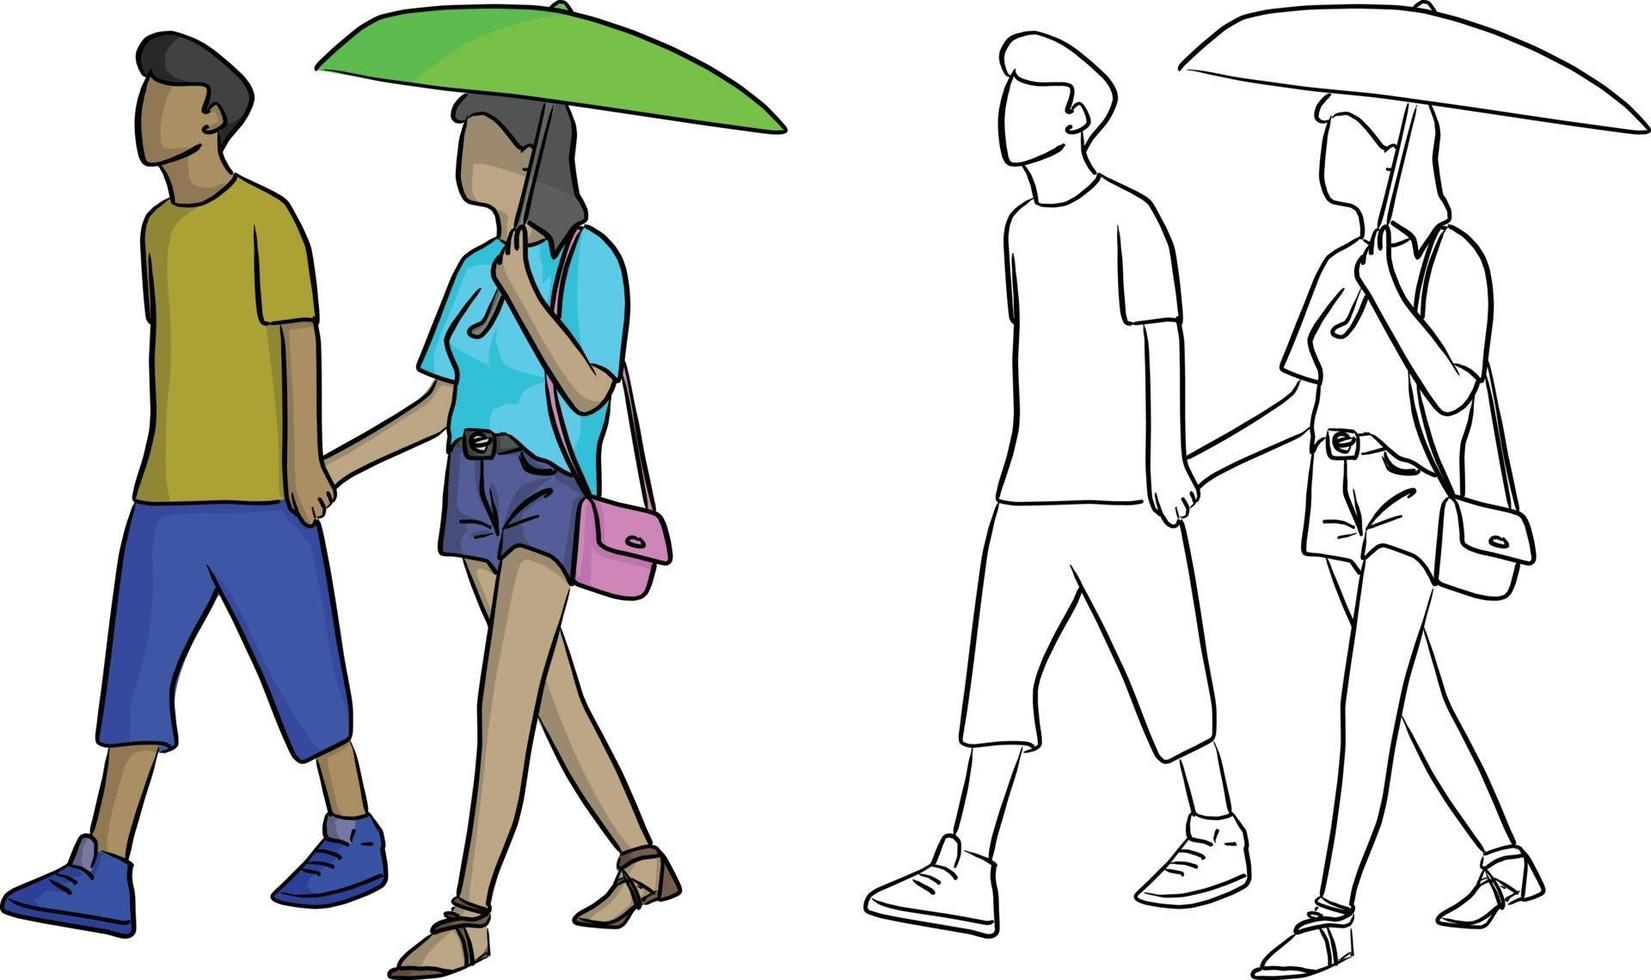 Mann, der mit seinem Liebhaber mit einem grünen Regenschirm spazieren geht vektor